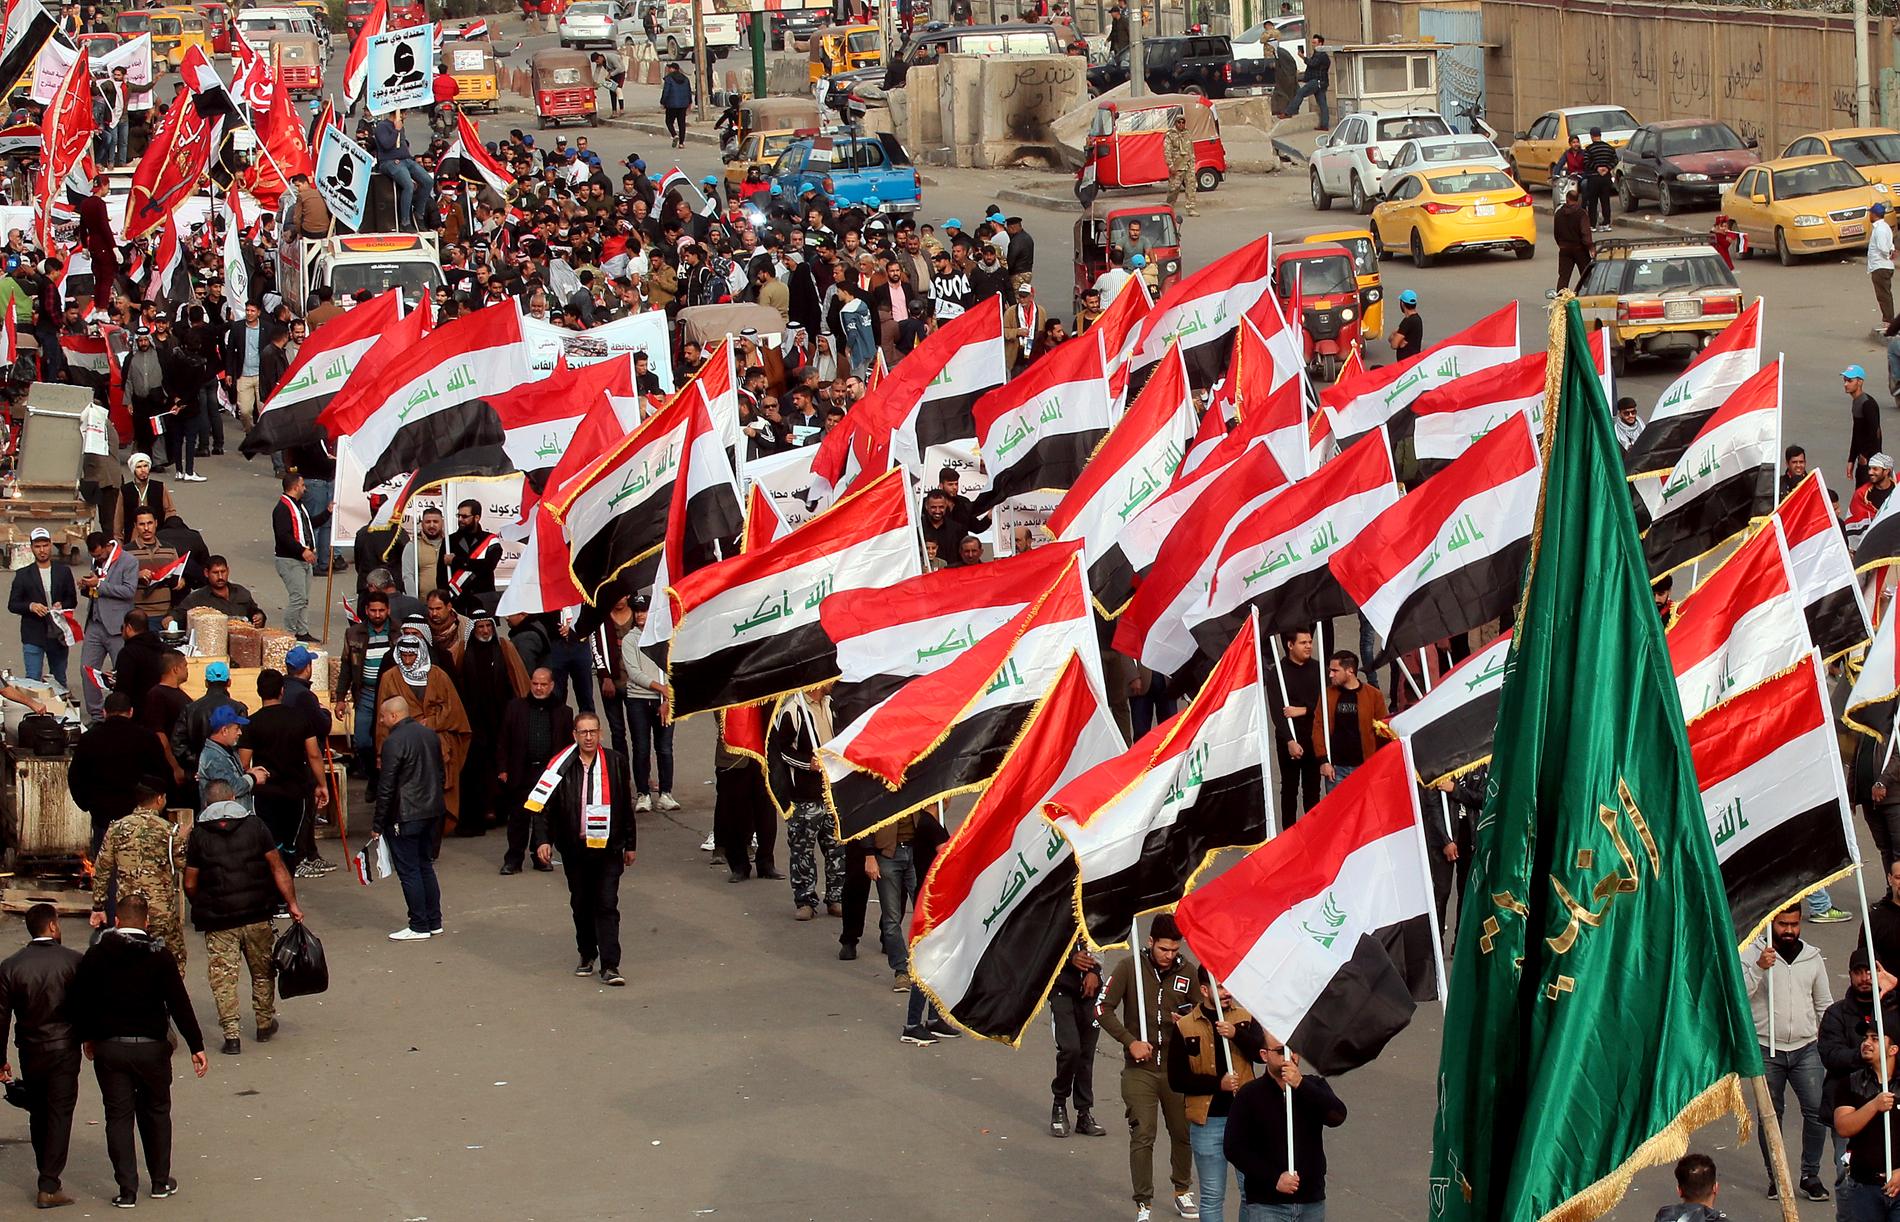 Oro för våldsamheter har ökat sedan makt- och styrkedemonstrationer genomförts på Tahrirtorget i Bagdad. På fredagen dödades flera demonstranter i en till synes planerad attack.